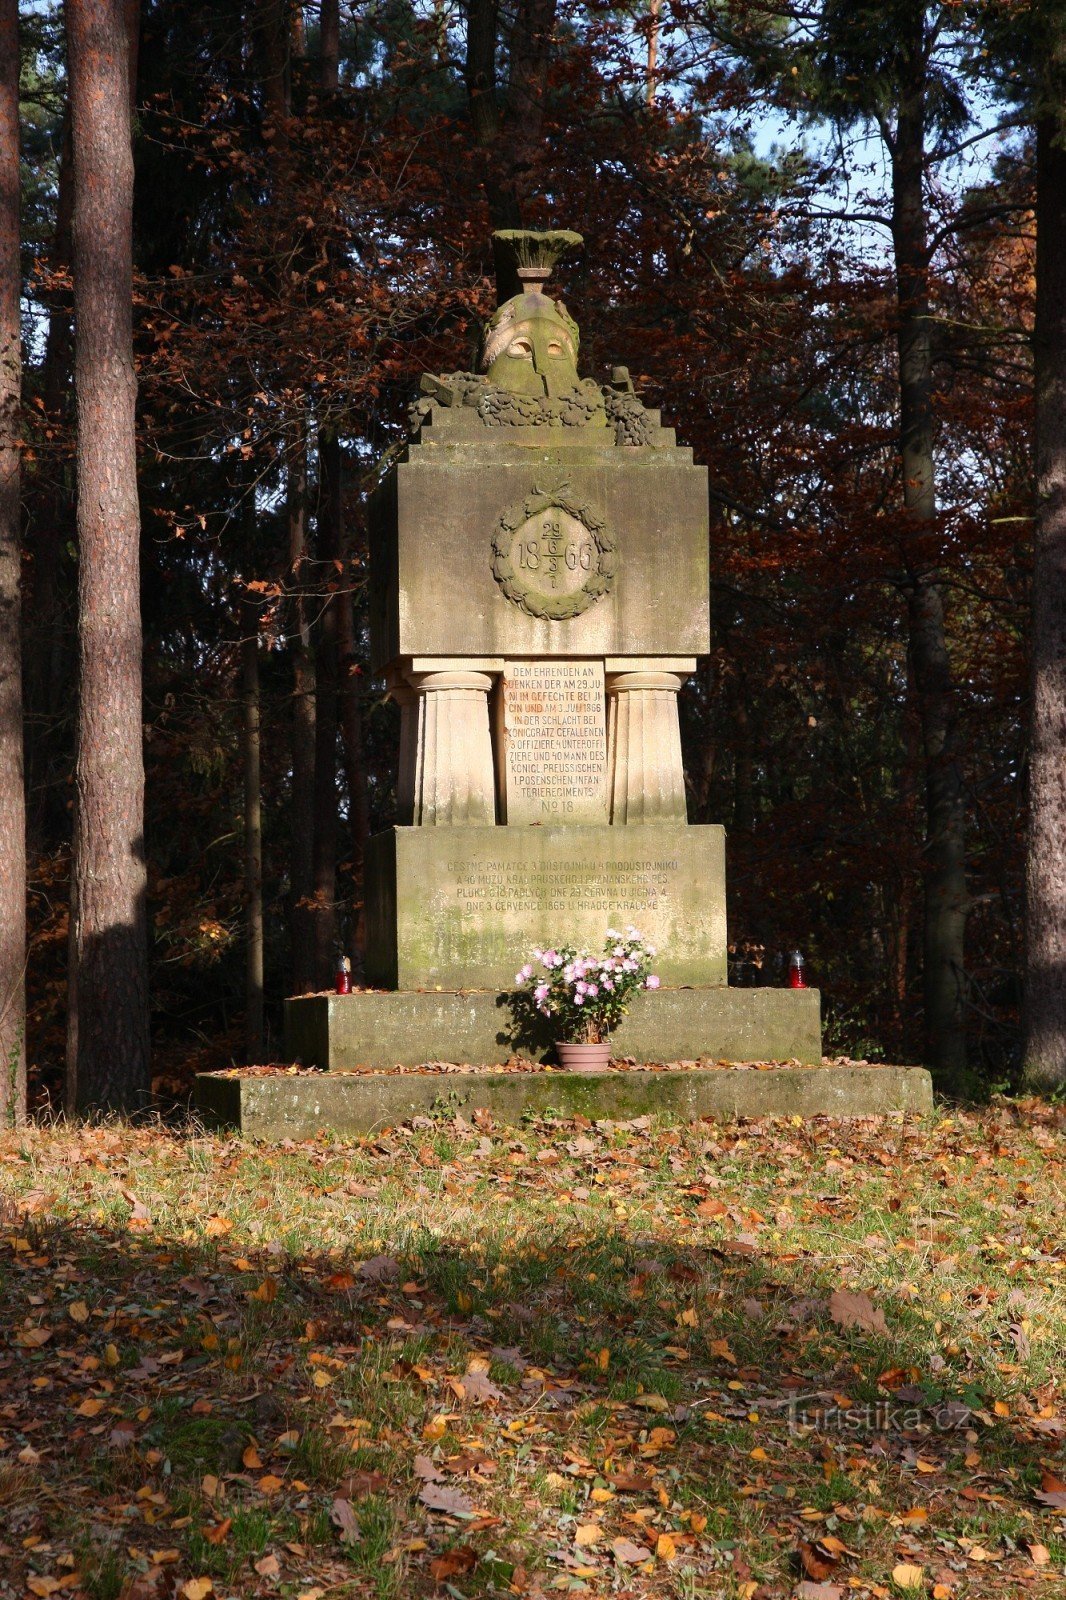 2-Đài tưởng niệm những người đã chết trong Chiến tranh Phổ-Áo năm 1866 tại Prachov